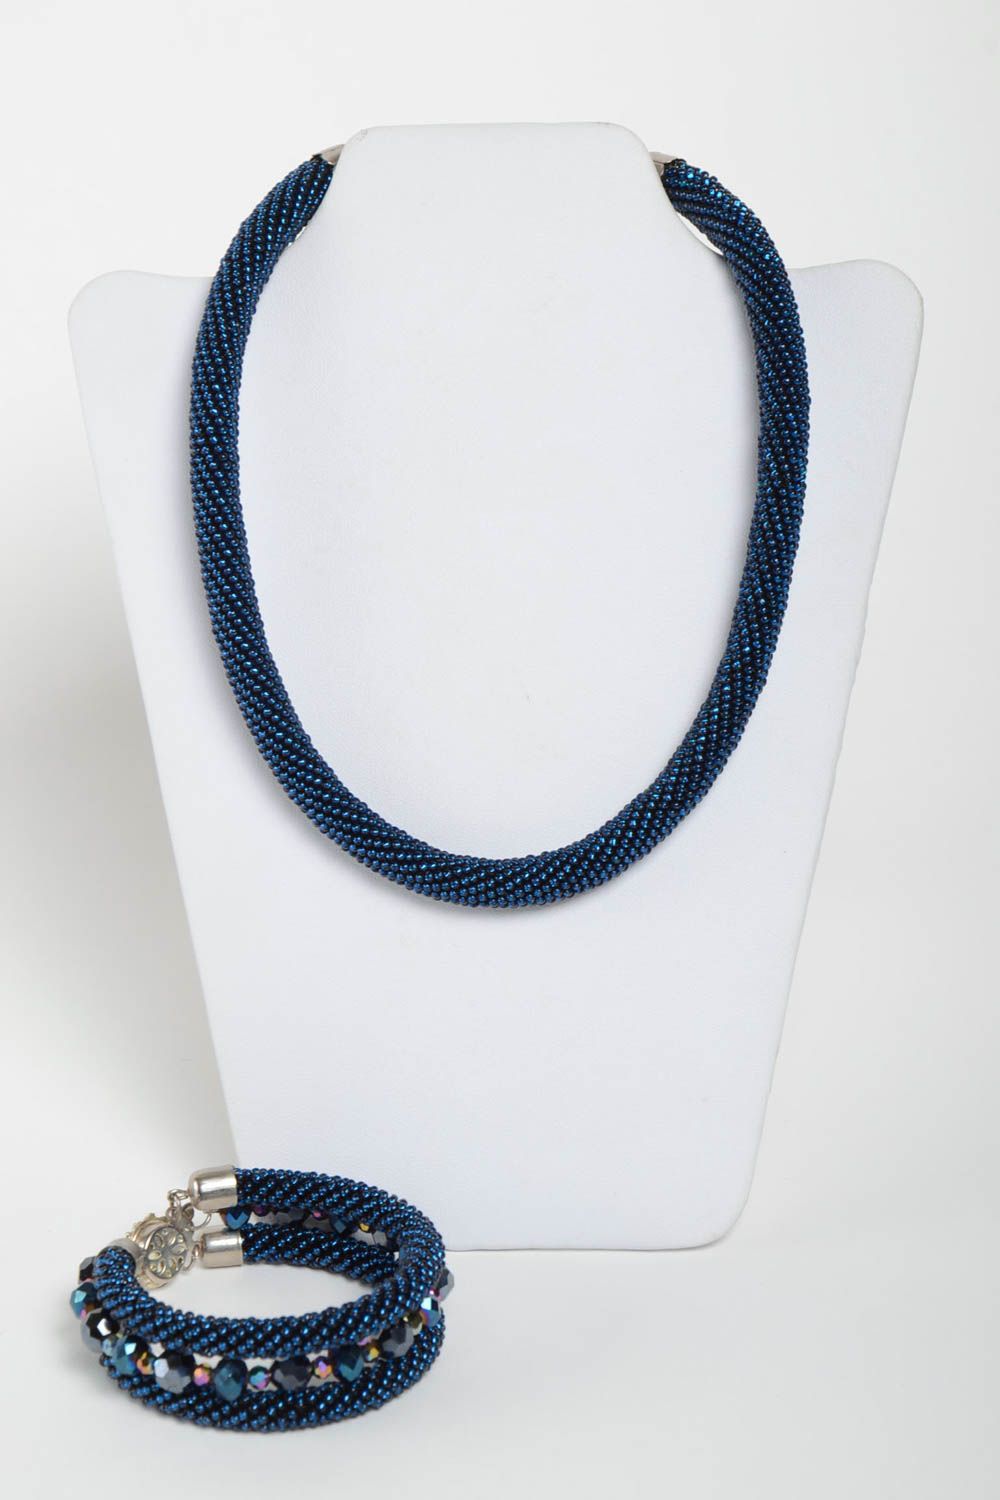 Комплект украшений из бисера колье и браслет жгуты ручной работы синие с отливом фото 2